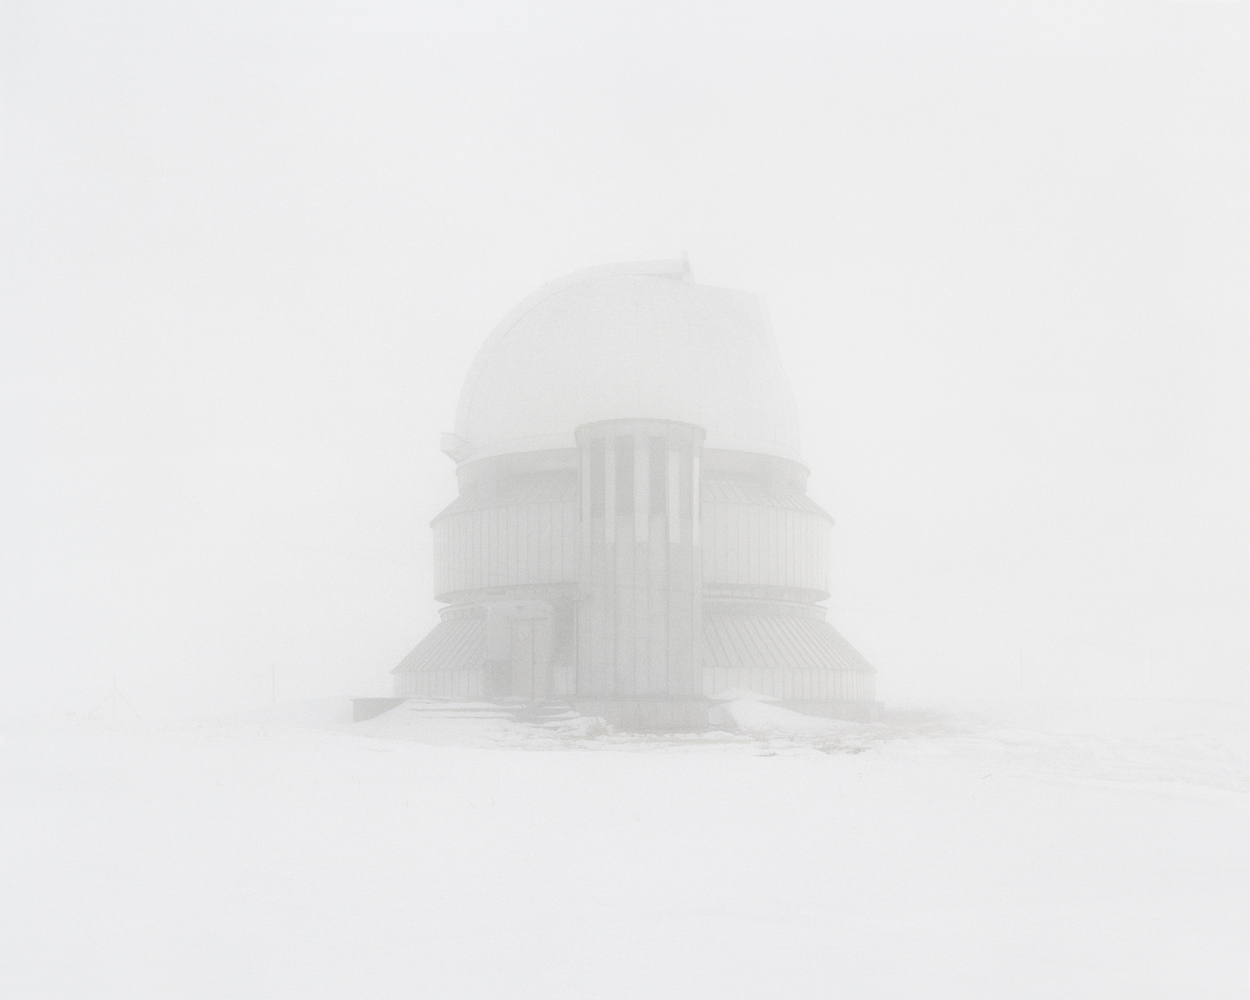 #29 из серии «‎Закрытые территории»‎. Заброшенная обсерватория. Казахстан, Алматинская область